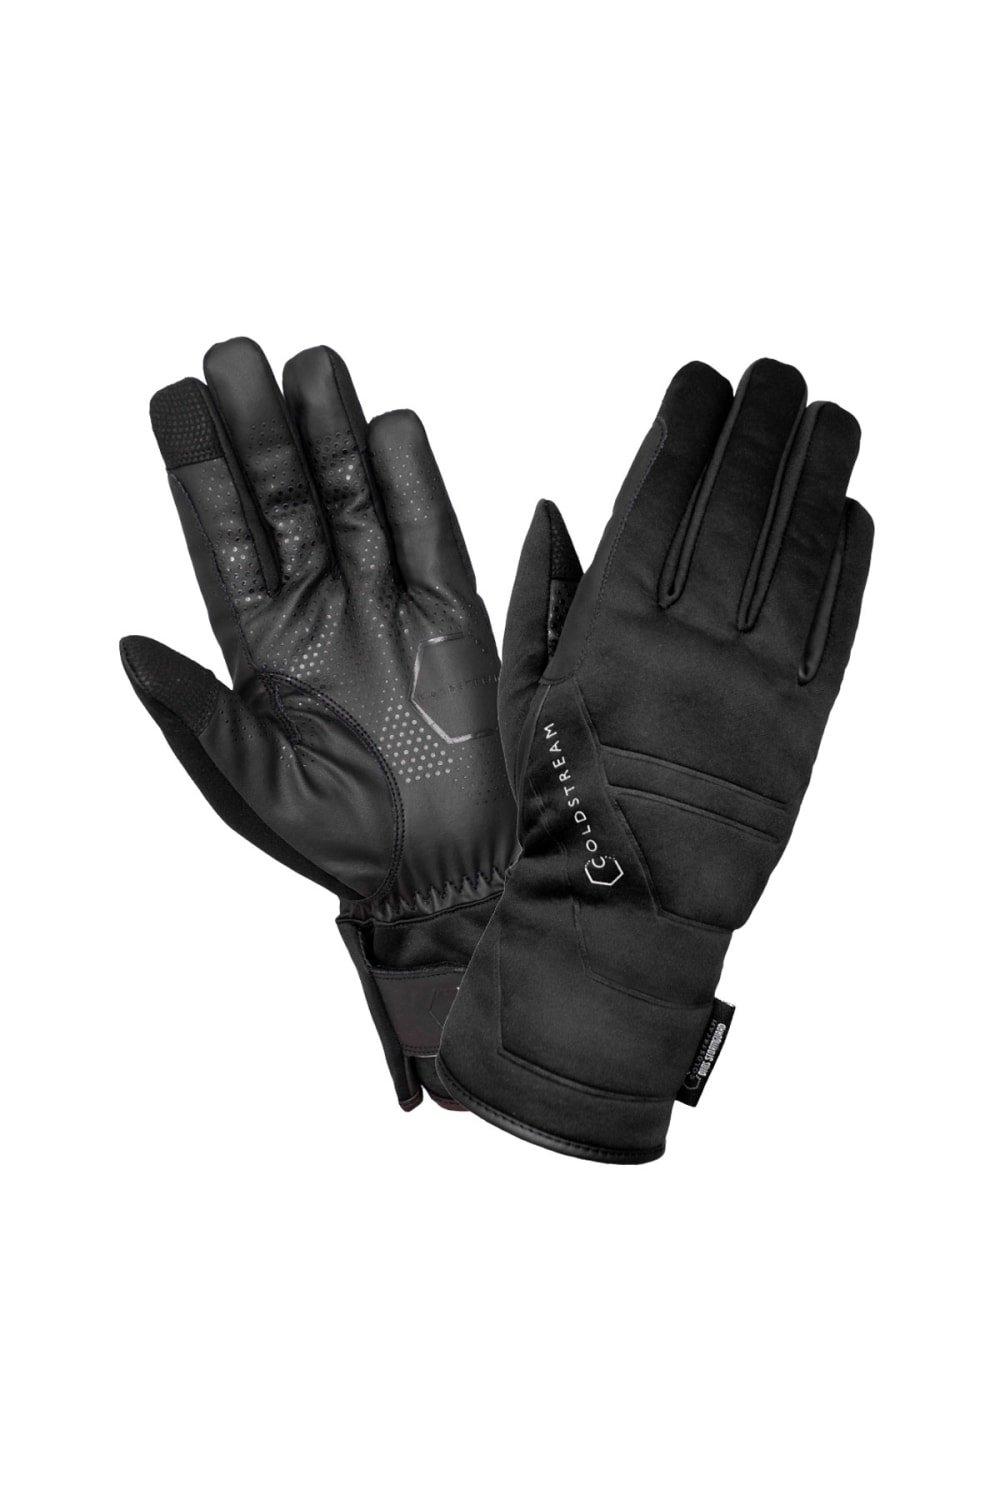 Зимние перчатки Duns StormGuard Coldstream, черный цена и фото